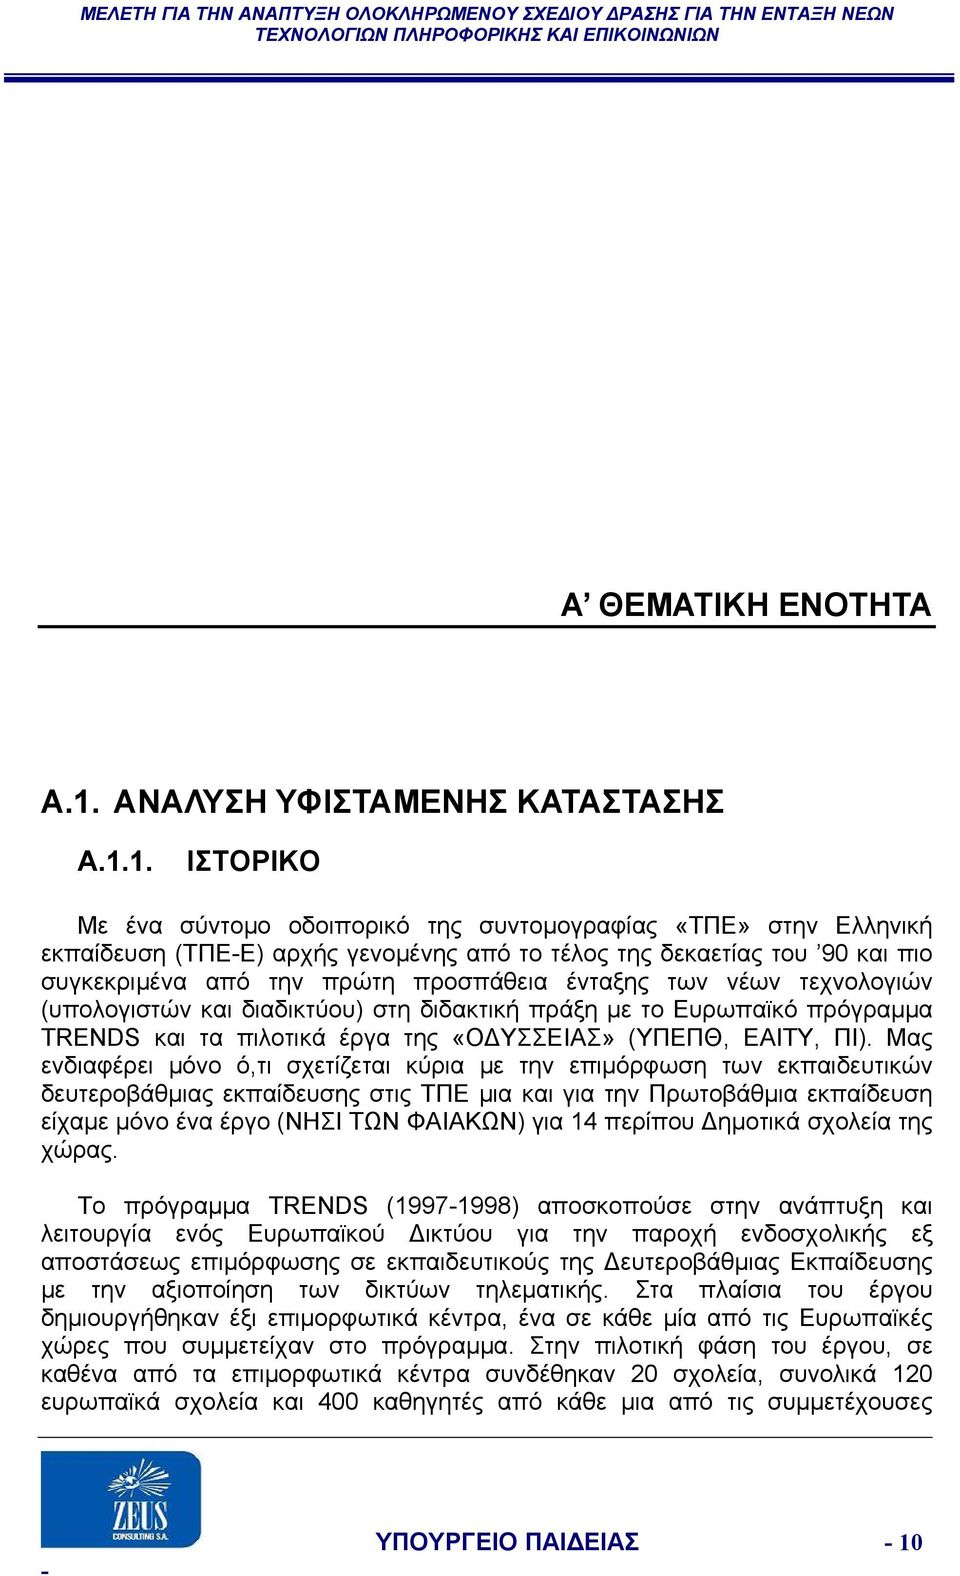 1. ΙΣΤΟΡΙΚΟ Με ένα σύντομο οδοιπορικό της συντομογραφίας «ΤΠΕ» στην Ελληνική εκπαίδευση (ΤΠΕ-Ε) αρχής γενομένης από το τέλος της δεκαετίας του 90 και πιο συγκεκριμένα από την πρώτη προσπάθεια ένταξης